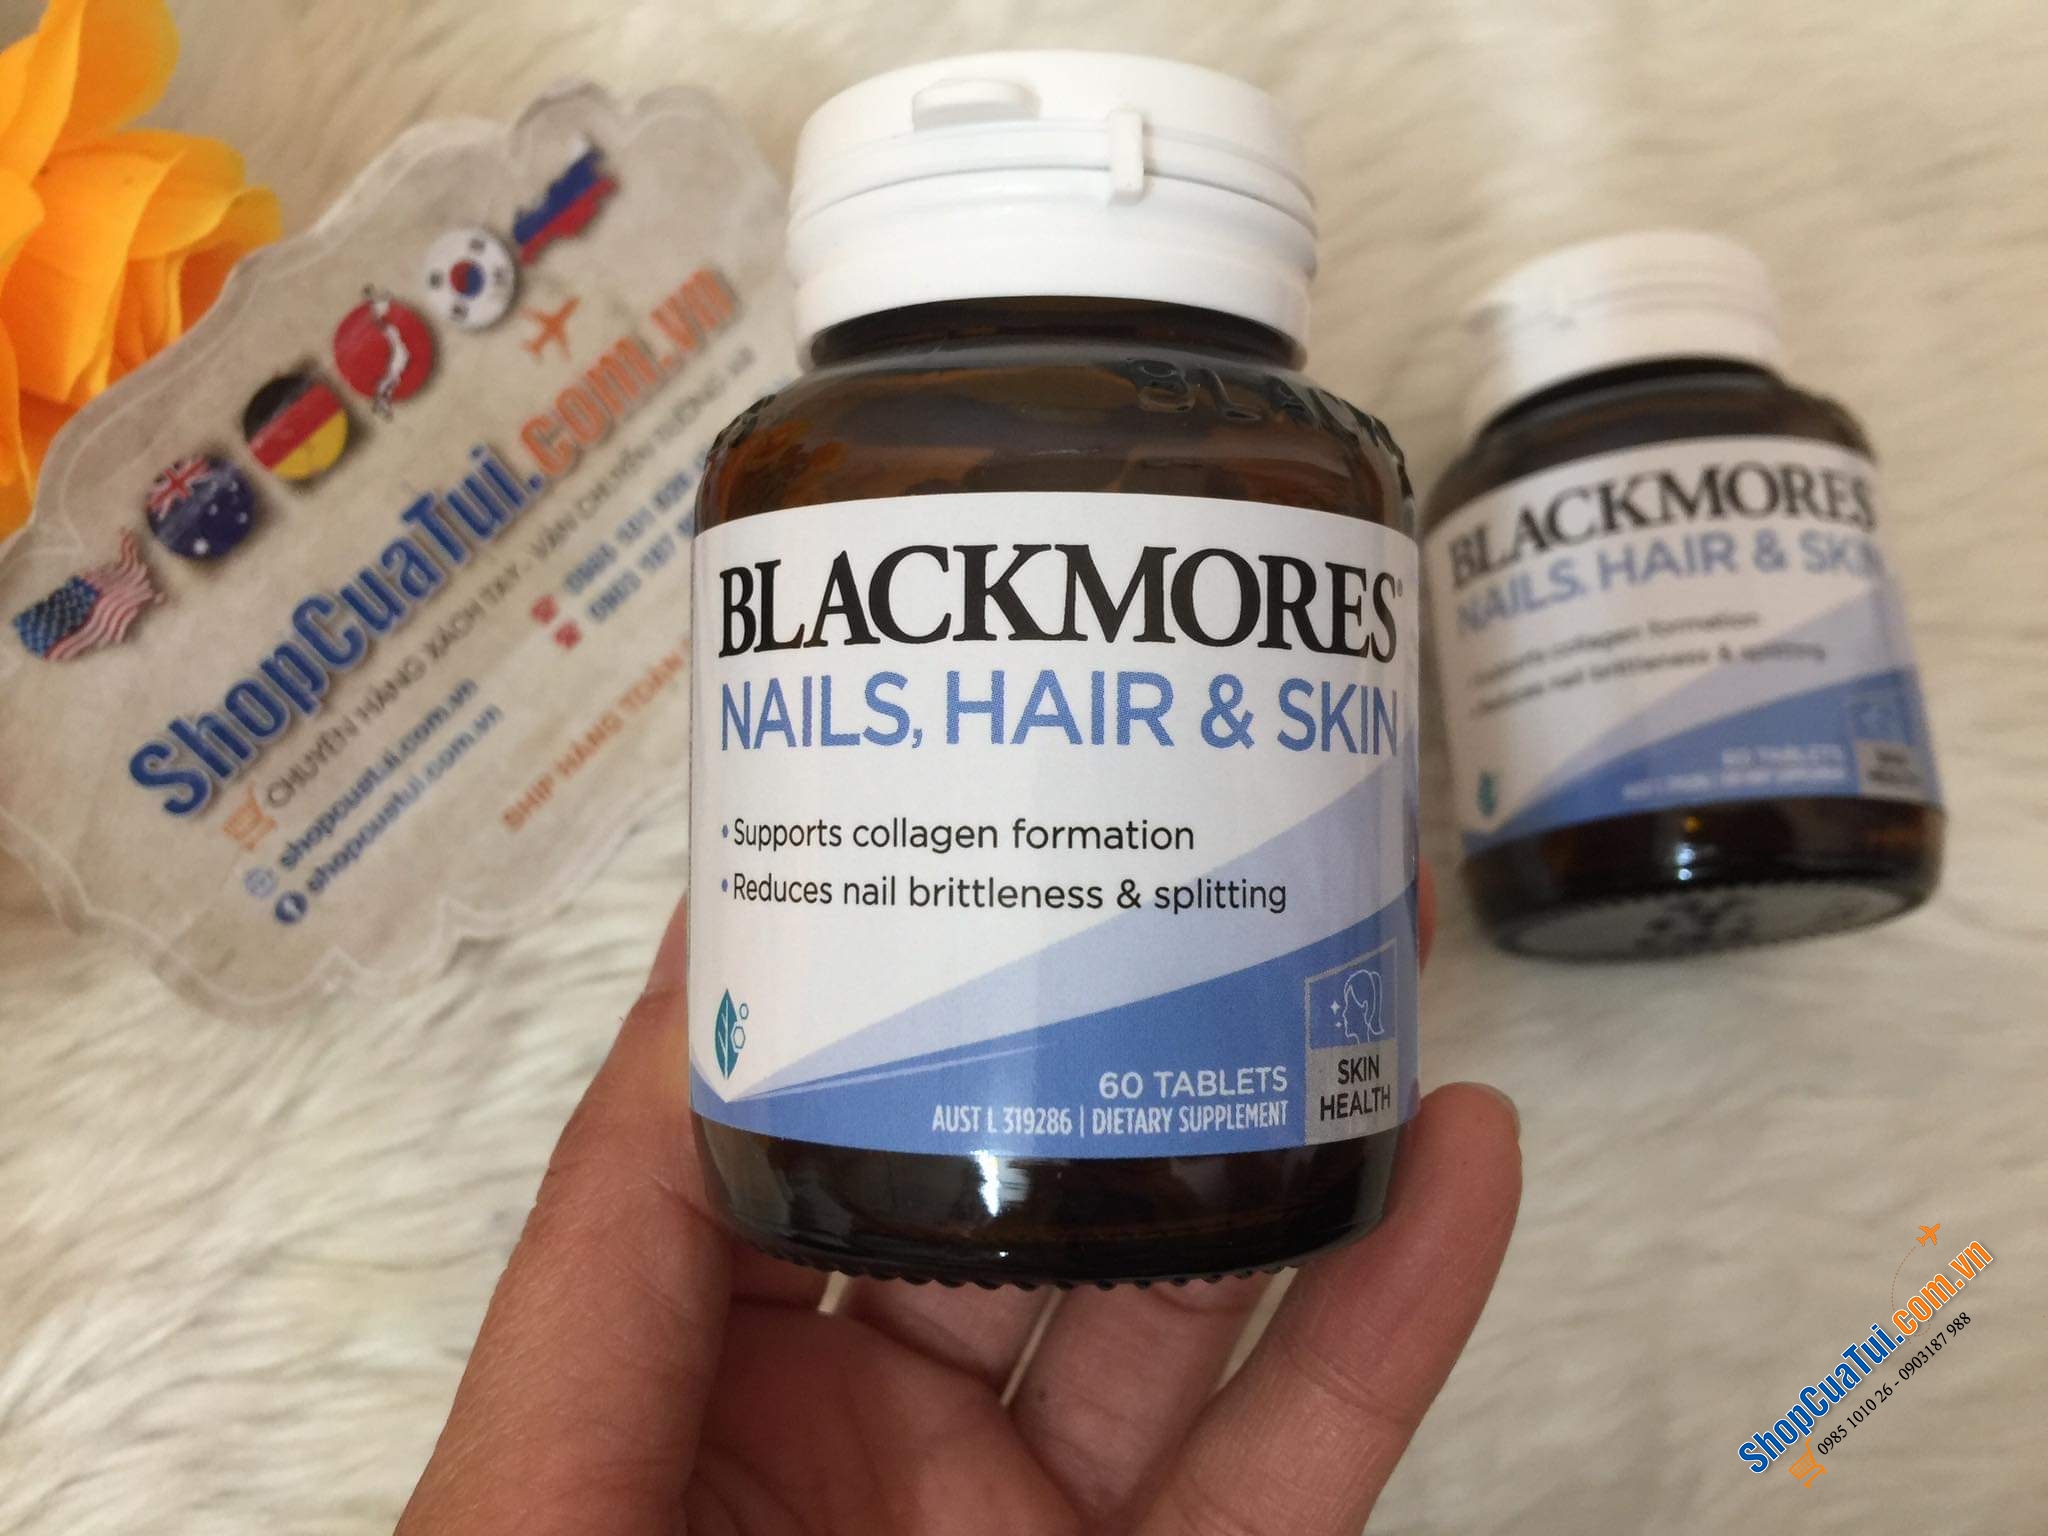 VIÊN UỐNG COLLAGEN CHO TÓC MÓNG DA Blackmores Nails Hair & Skin 60 Tablets (mẫu mới)